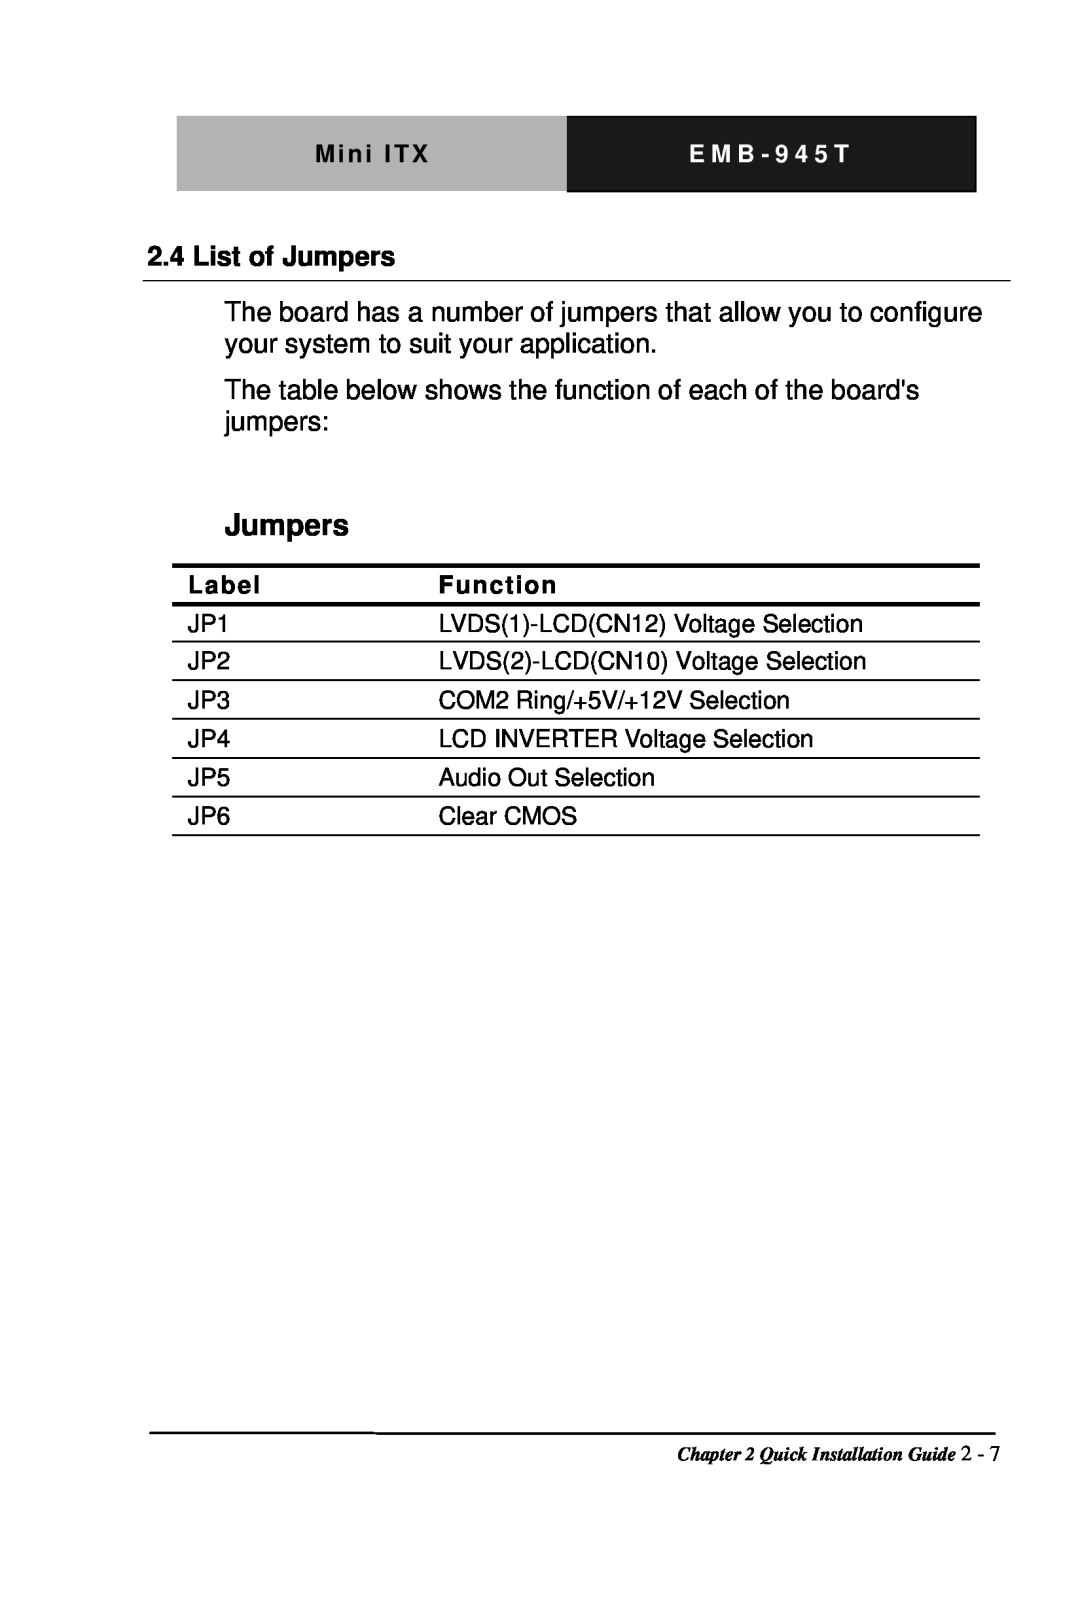 Intel EMB-945T manual List of Jumpers 